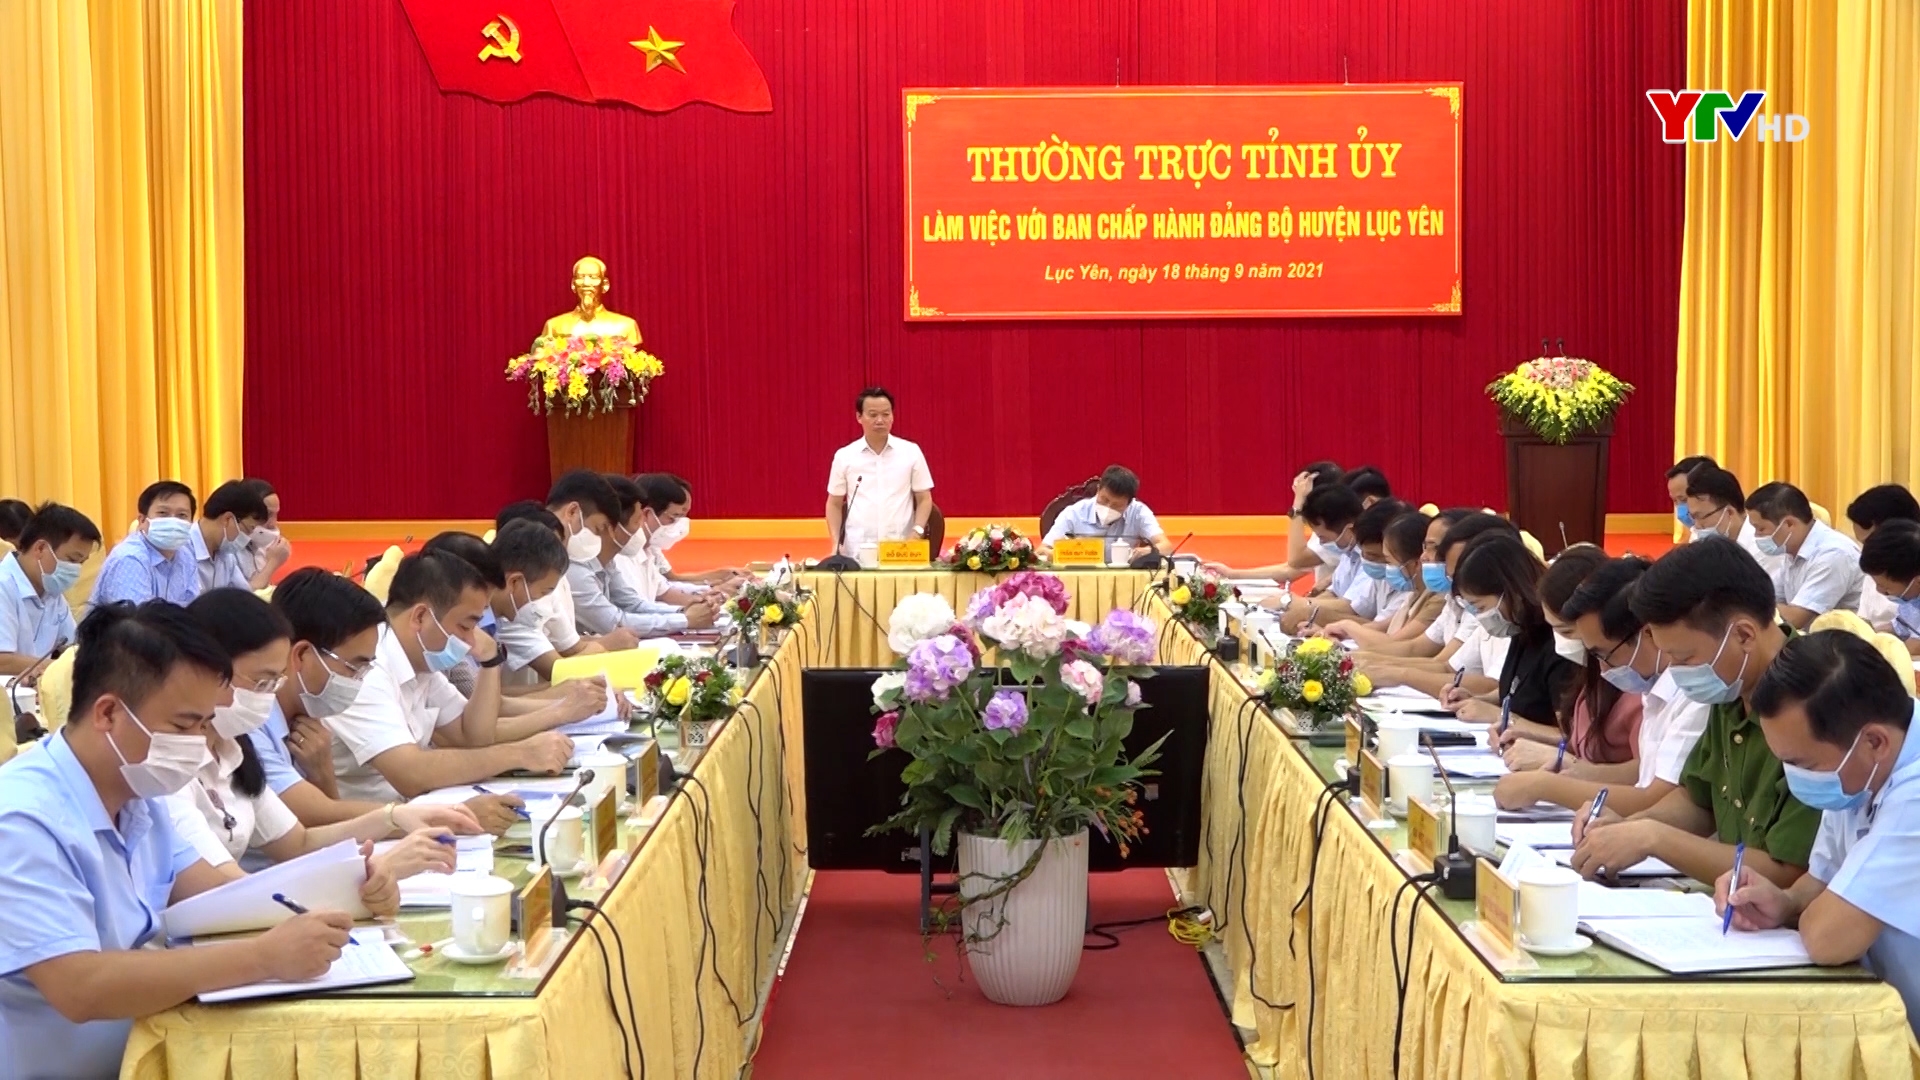 Thường trực Tỉnh ủy làm việc với Ban Chấp hành Đảng bộ huyện Lục Yên